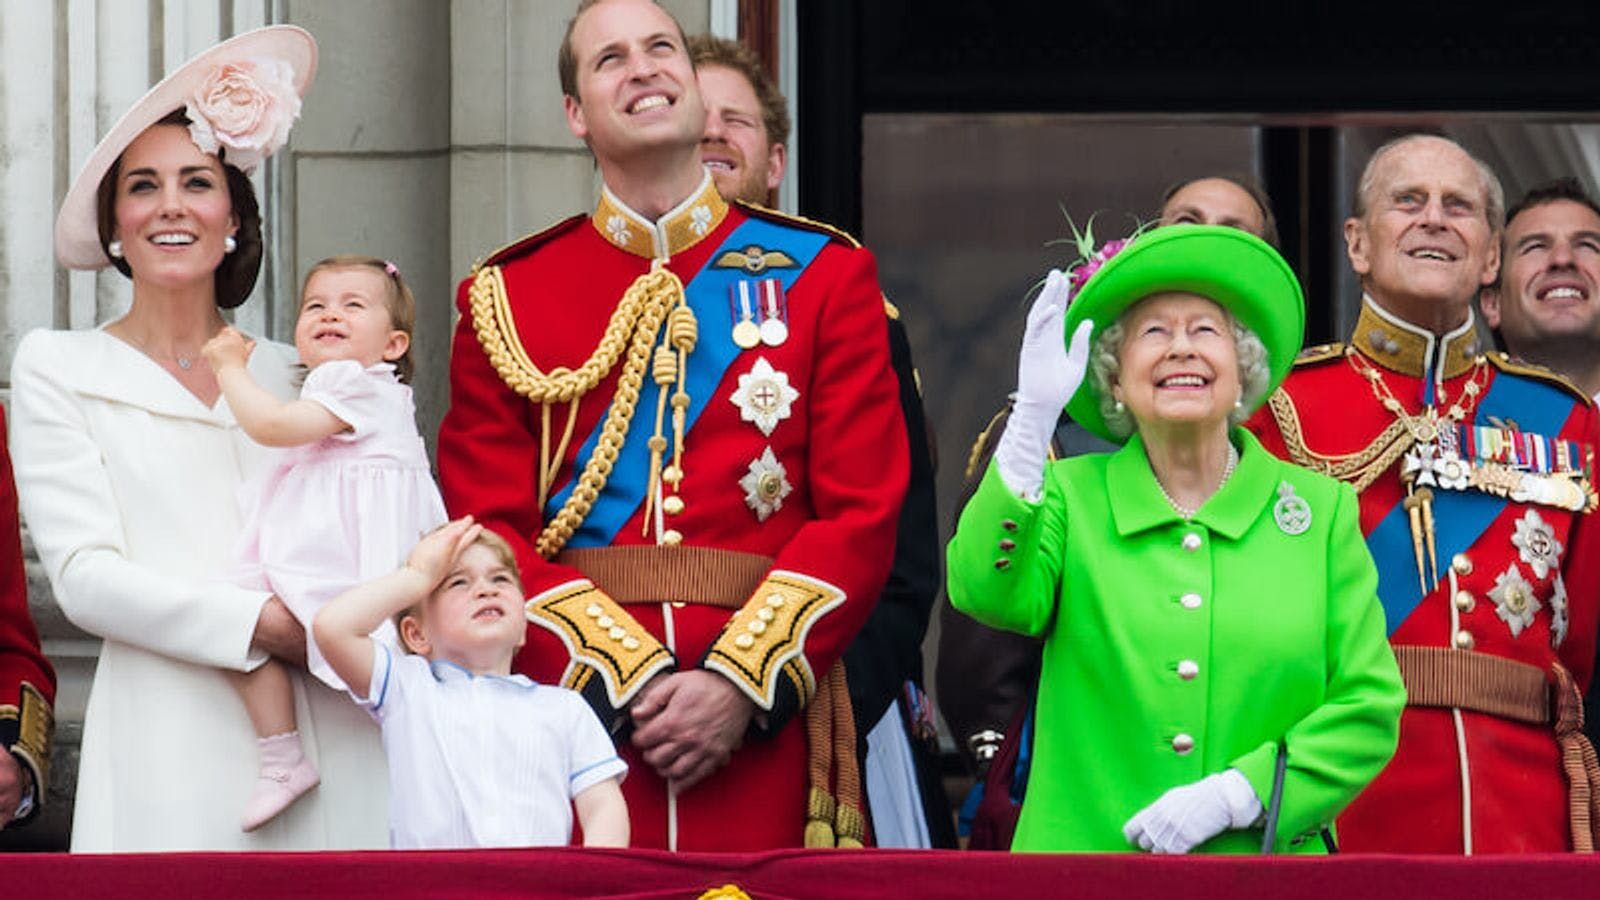 Royal Family on the balcony at Buckingham Palace